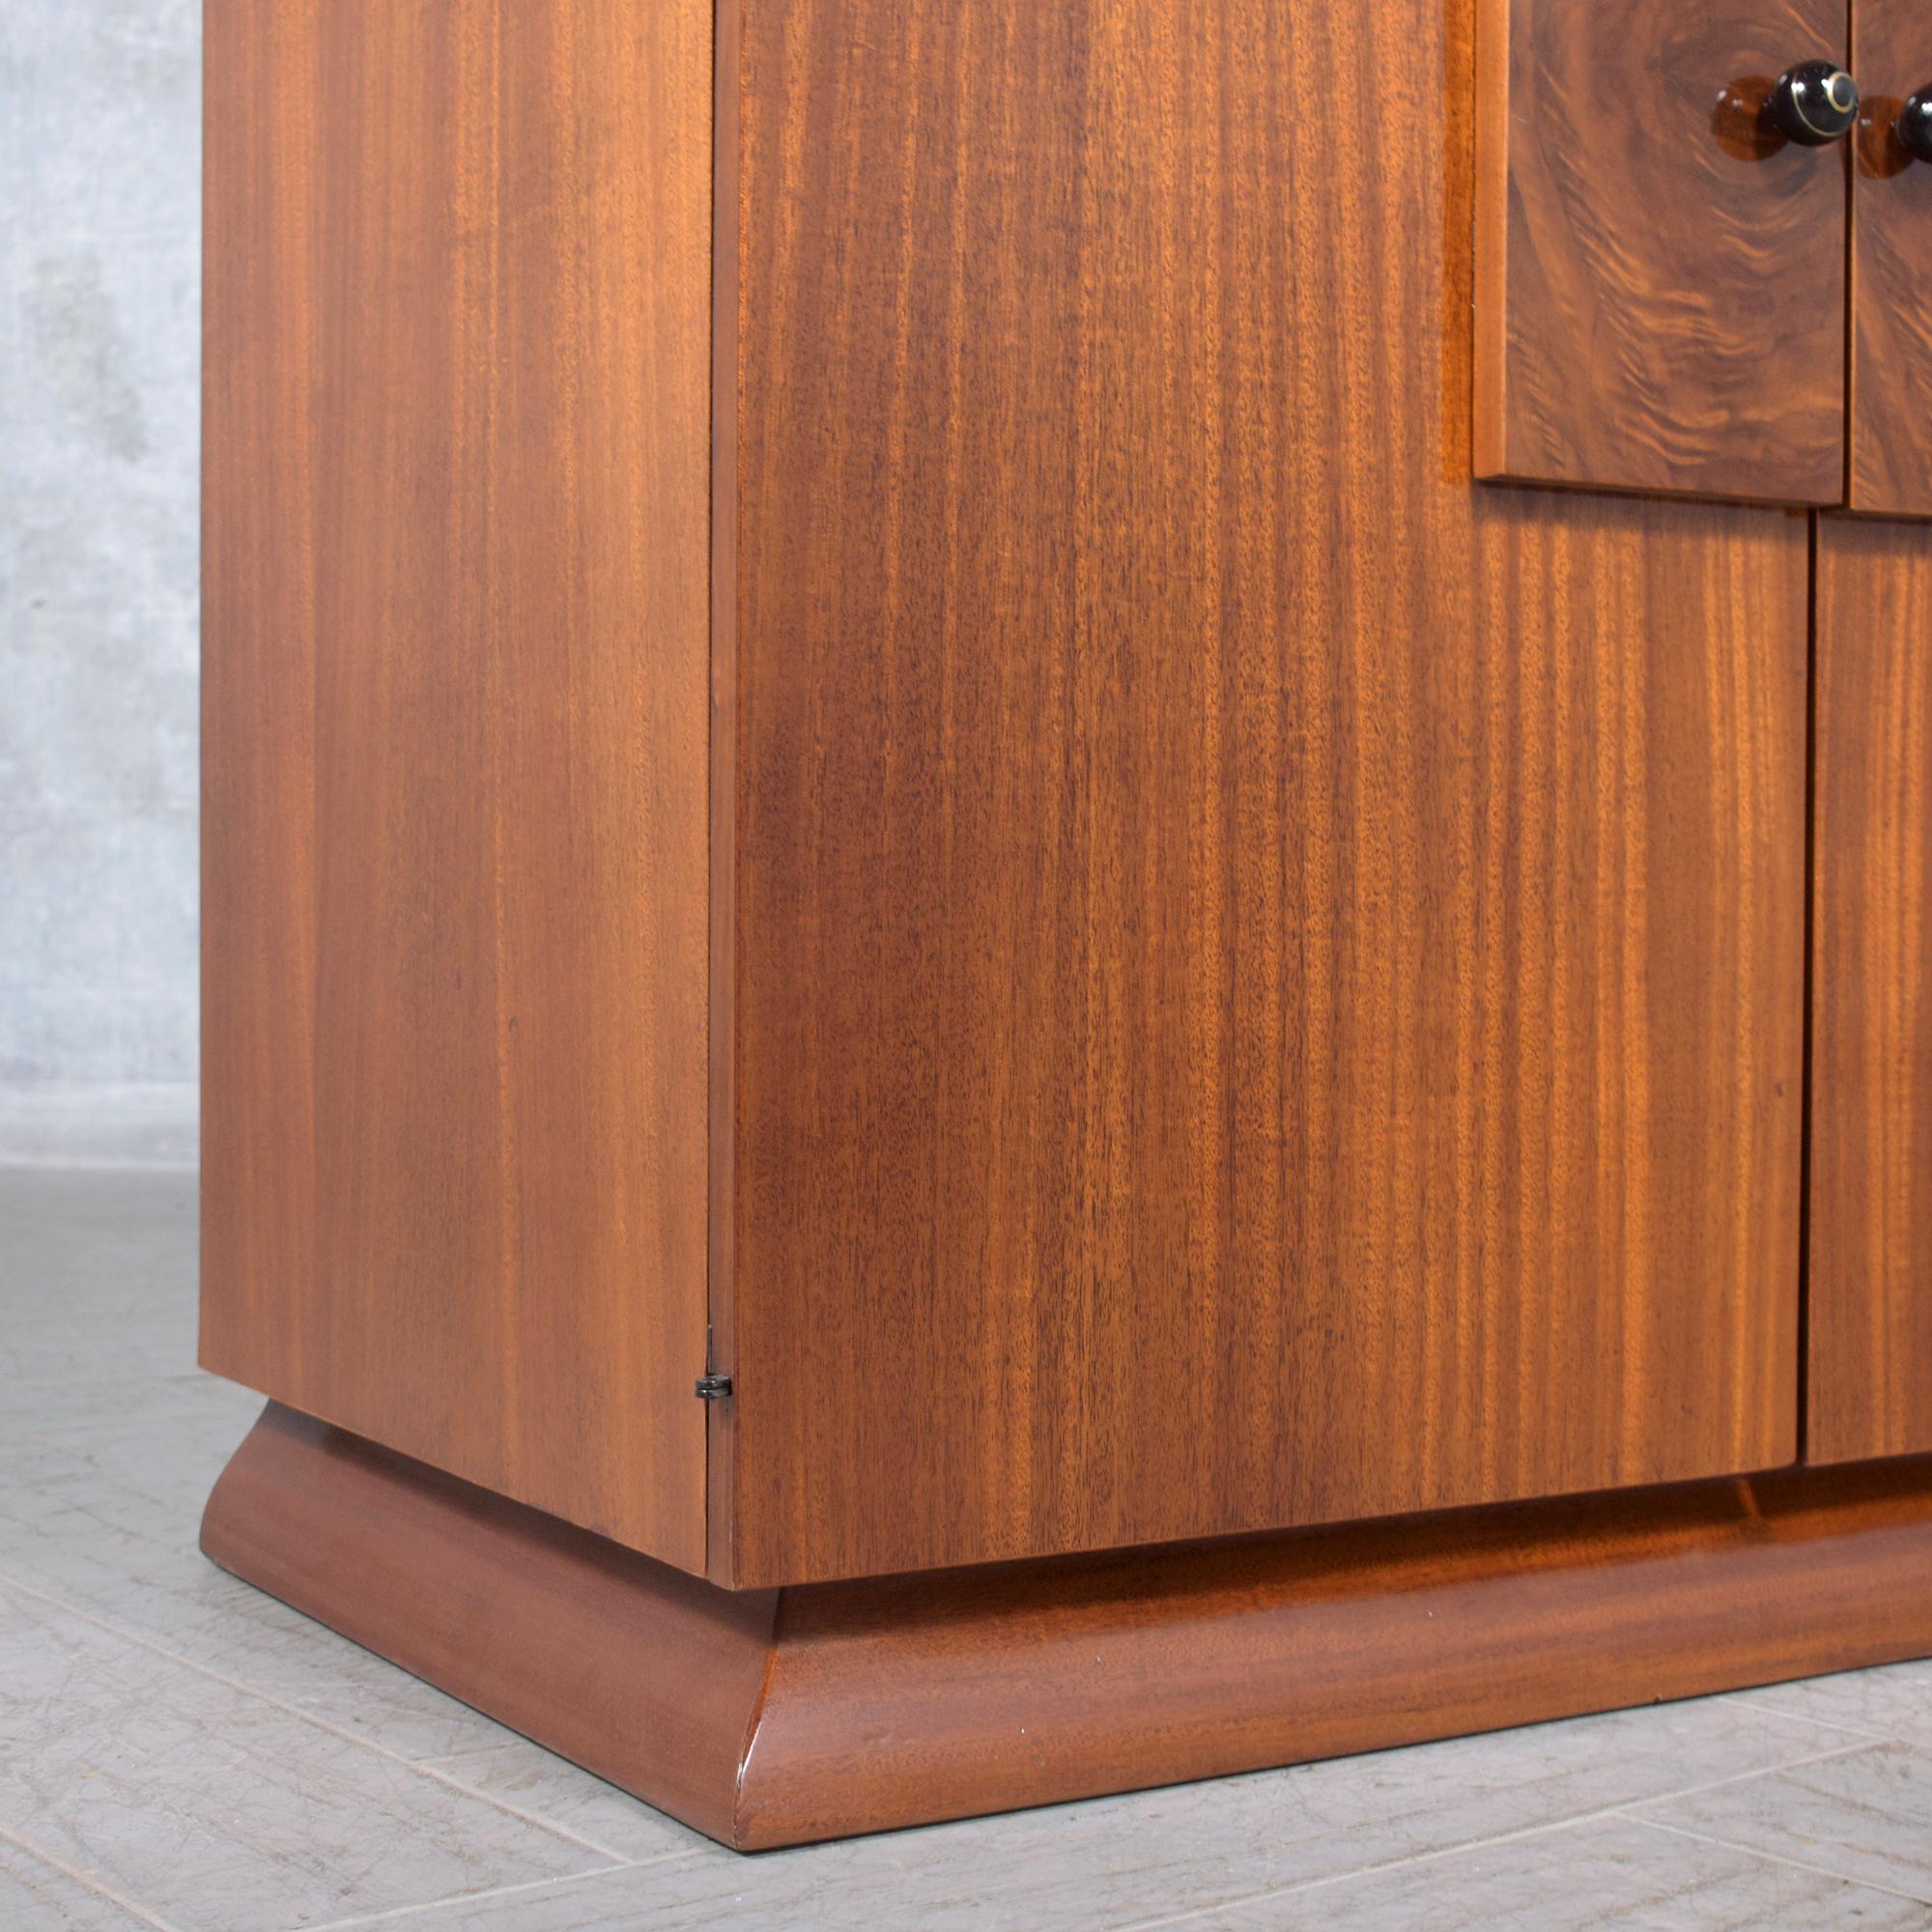 Restored Vintage Mid-Century Wood Cabinet with Burl Door Details 2